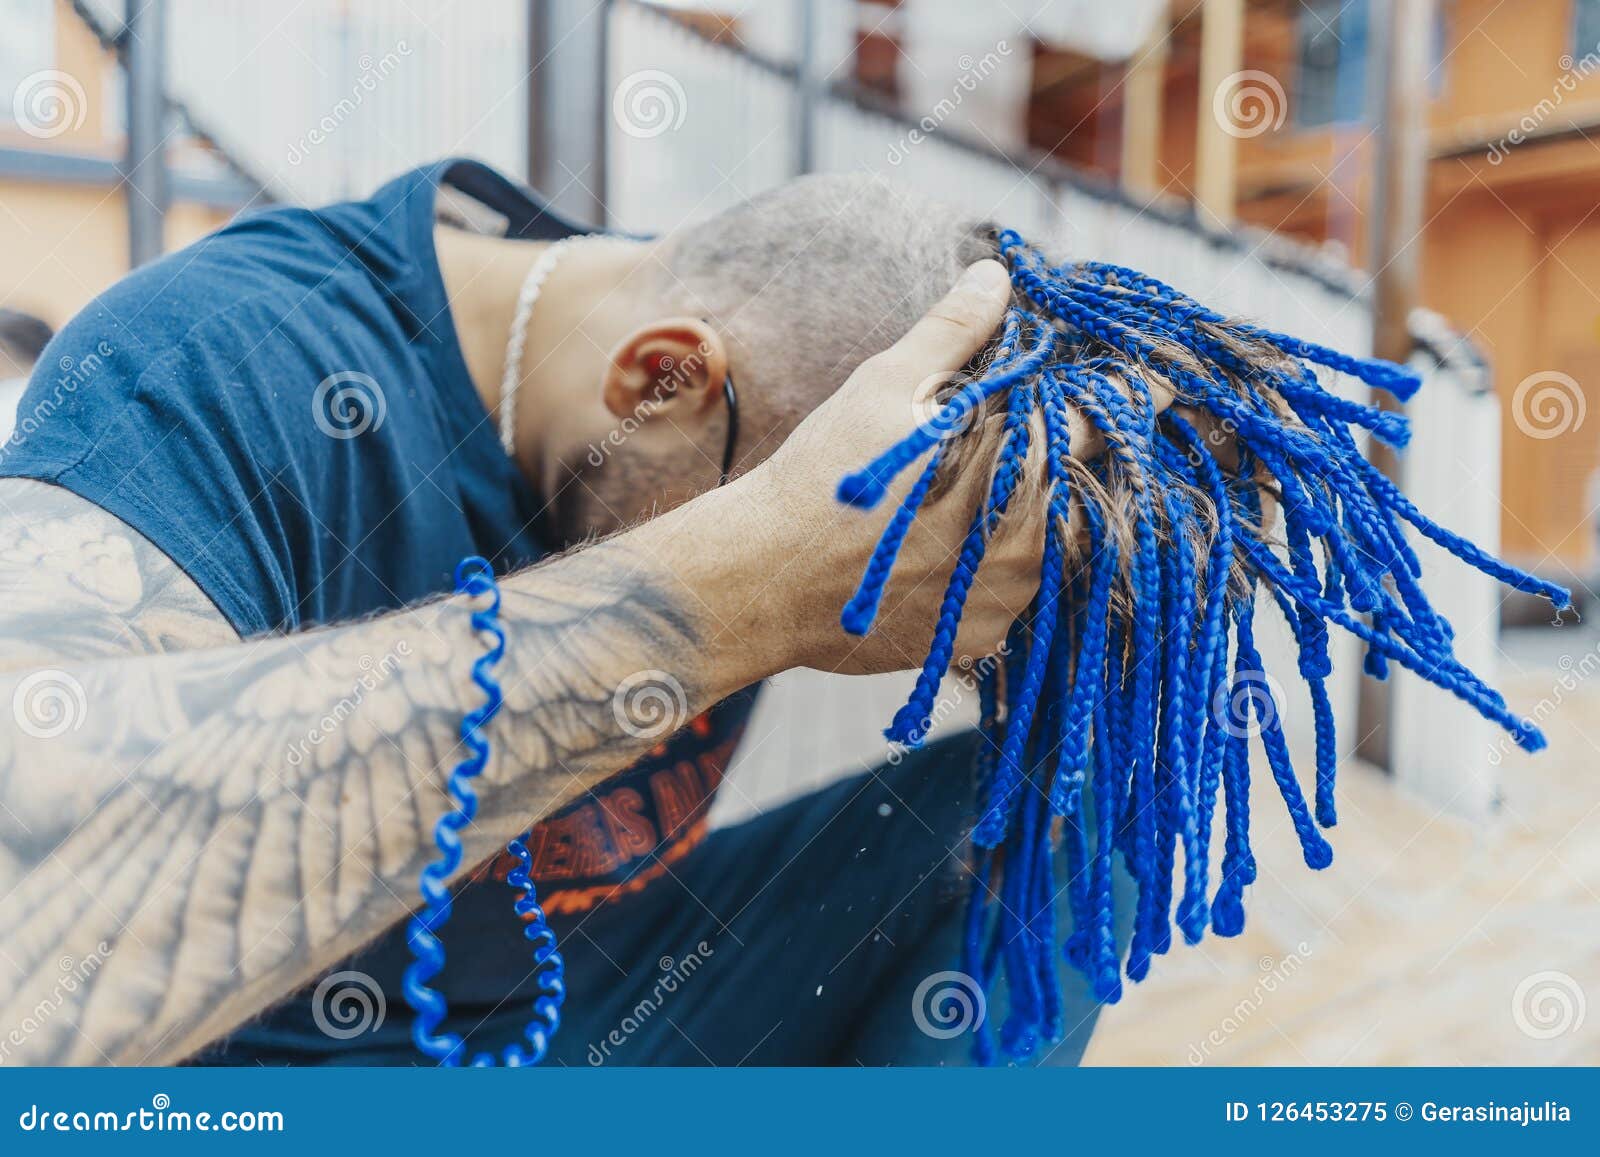 blue tip hair man